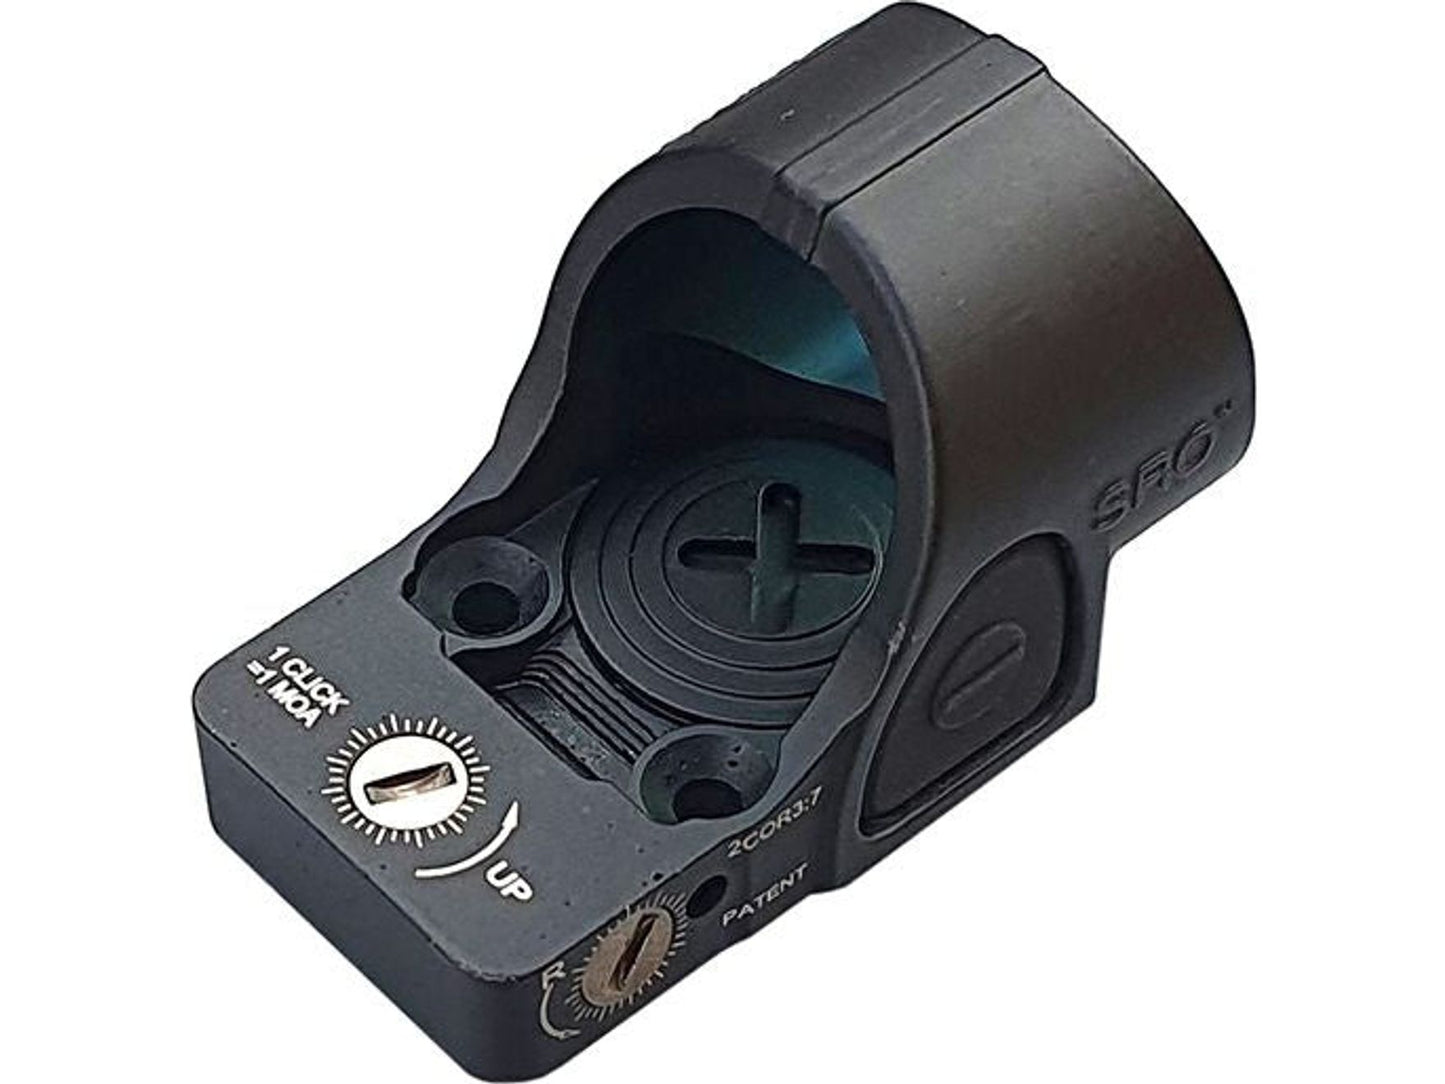 CCCP RMR Mini Dot Sight (Black)